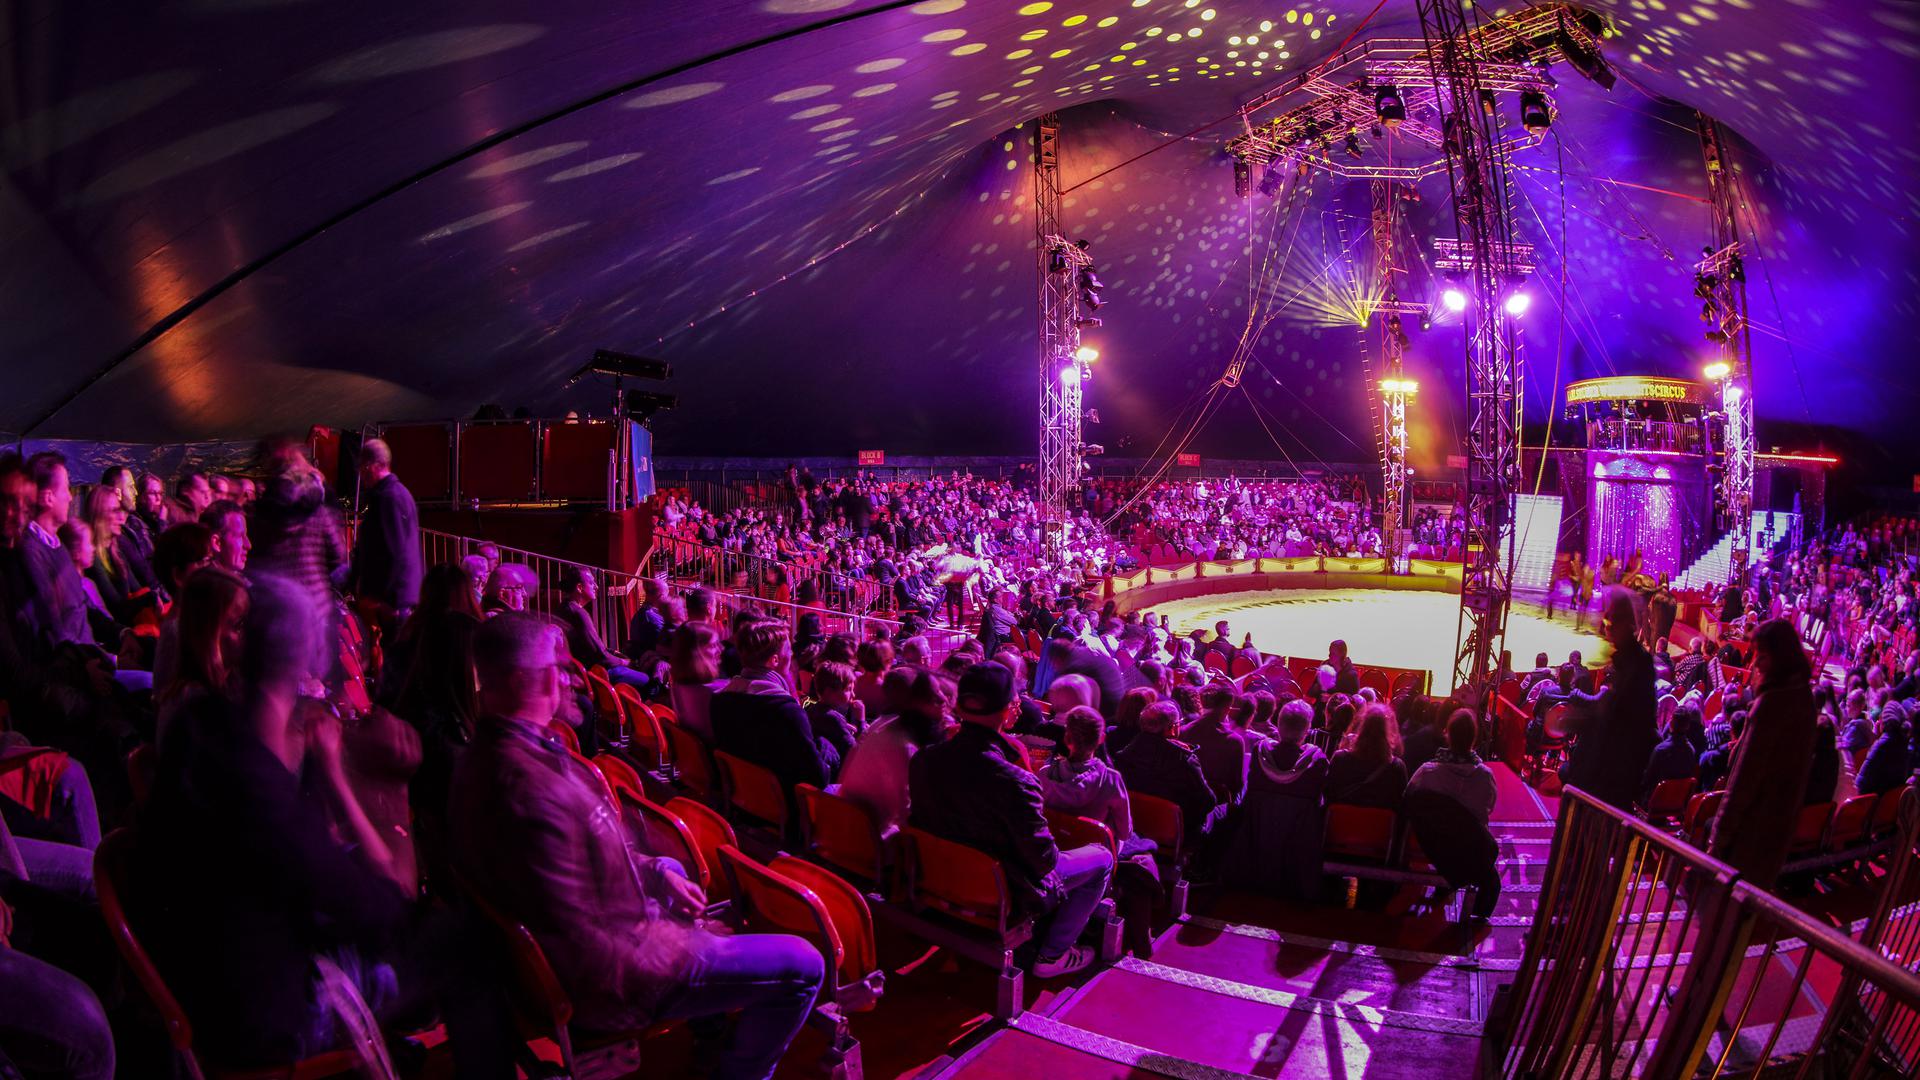 Insgesamt bietet das Zelt rund 1.400 Besuchern einen Sitzplatz im Circuszelt und ist damit größer als ein gängiges Tourneezelt. Die Manege ist allerdings ganz klassisch gehalten und hat einen Durchmesser von rund 13 Metern.